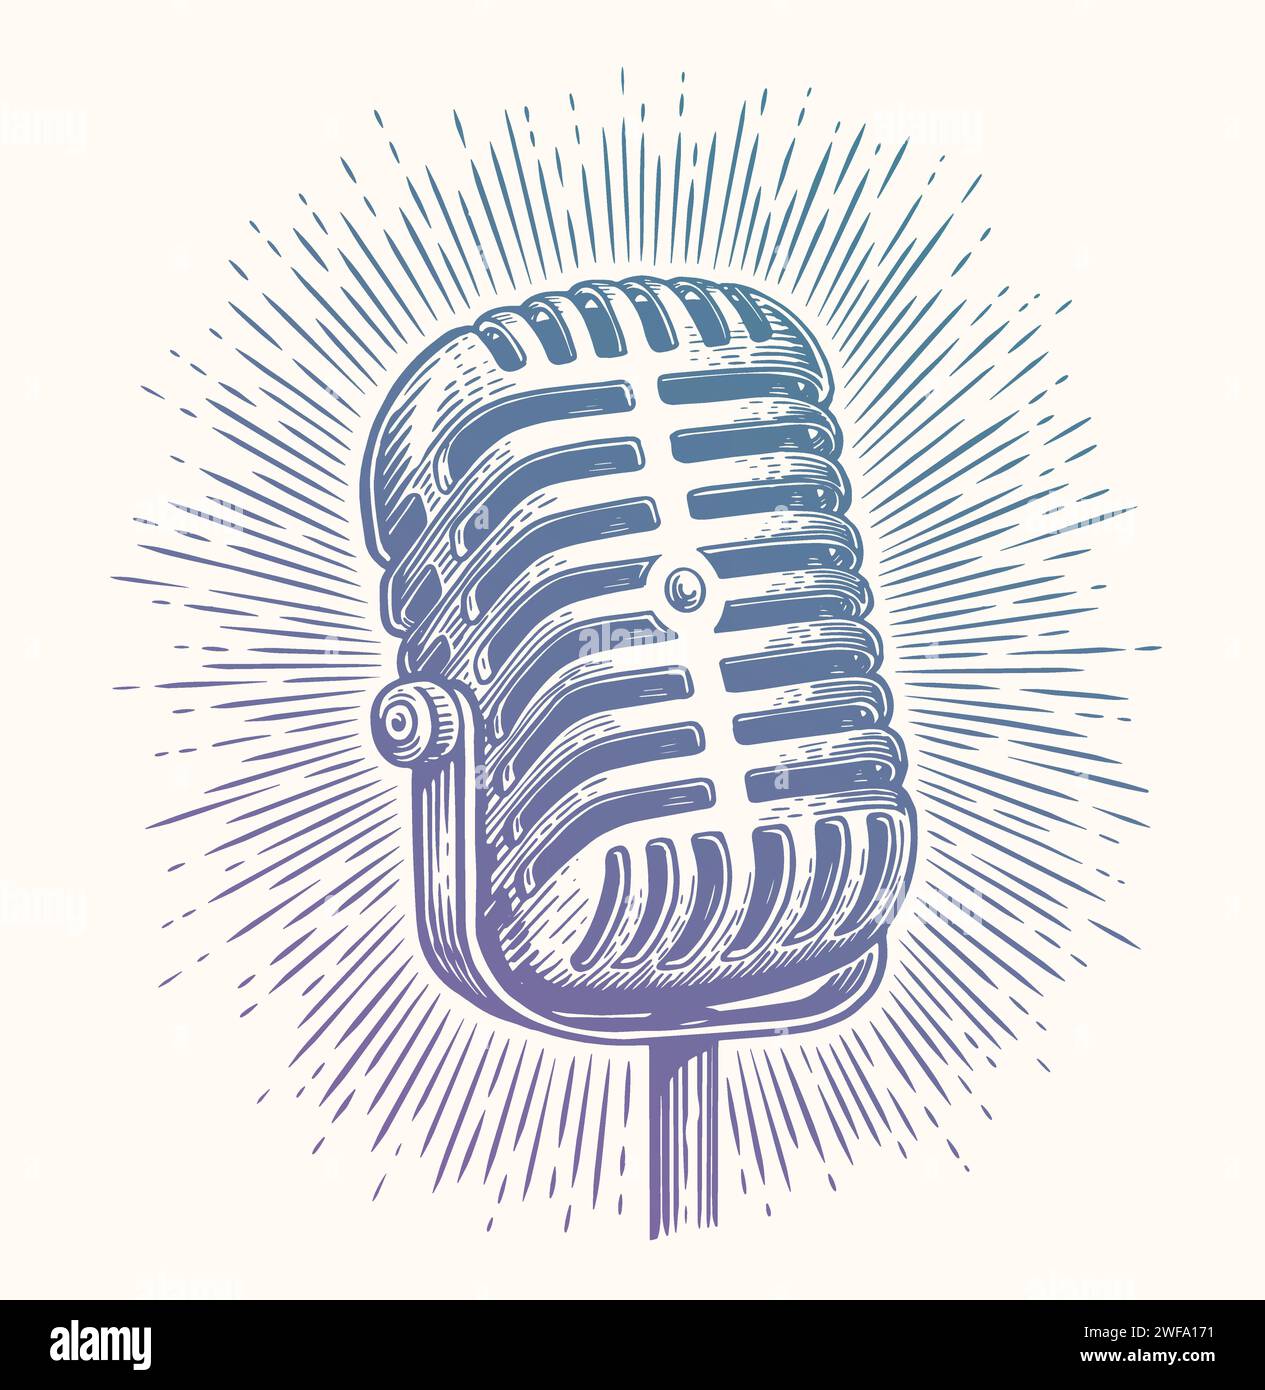 Croquis de microphone rétro. Illustration vectorielle vintage dessinée à la main Illustration de Vecteur